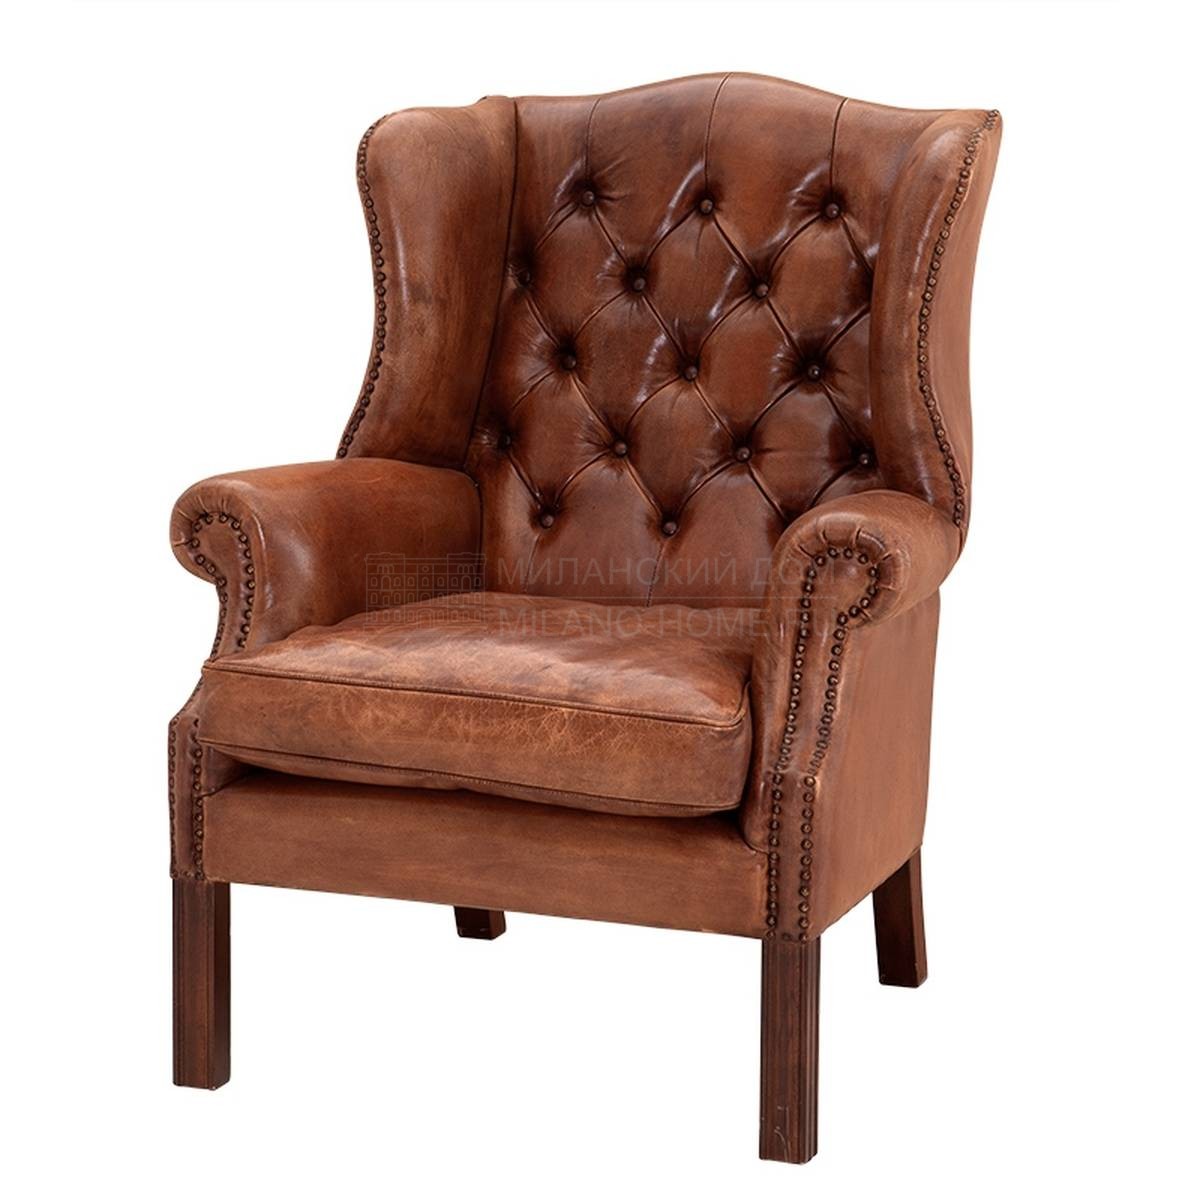 Каминное кресло Bradley leather из Голландии фабрики EICHHOLTZ